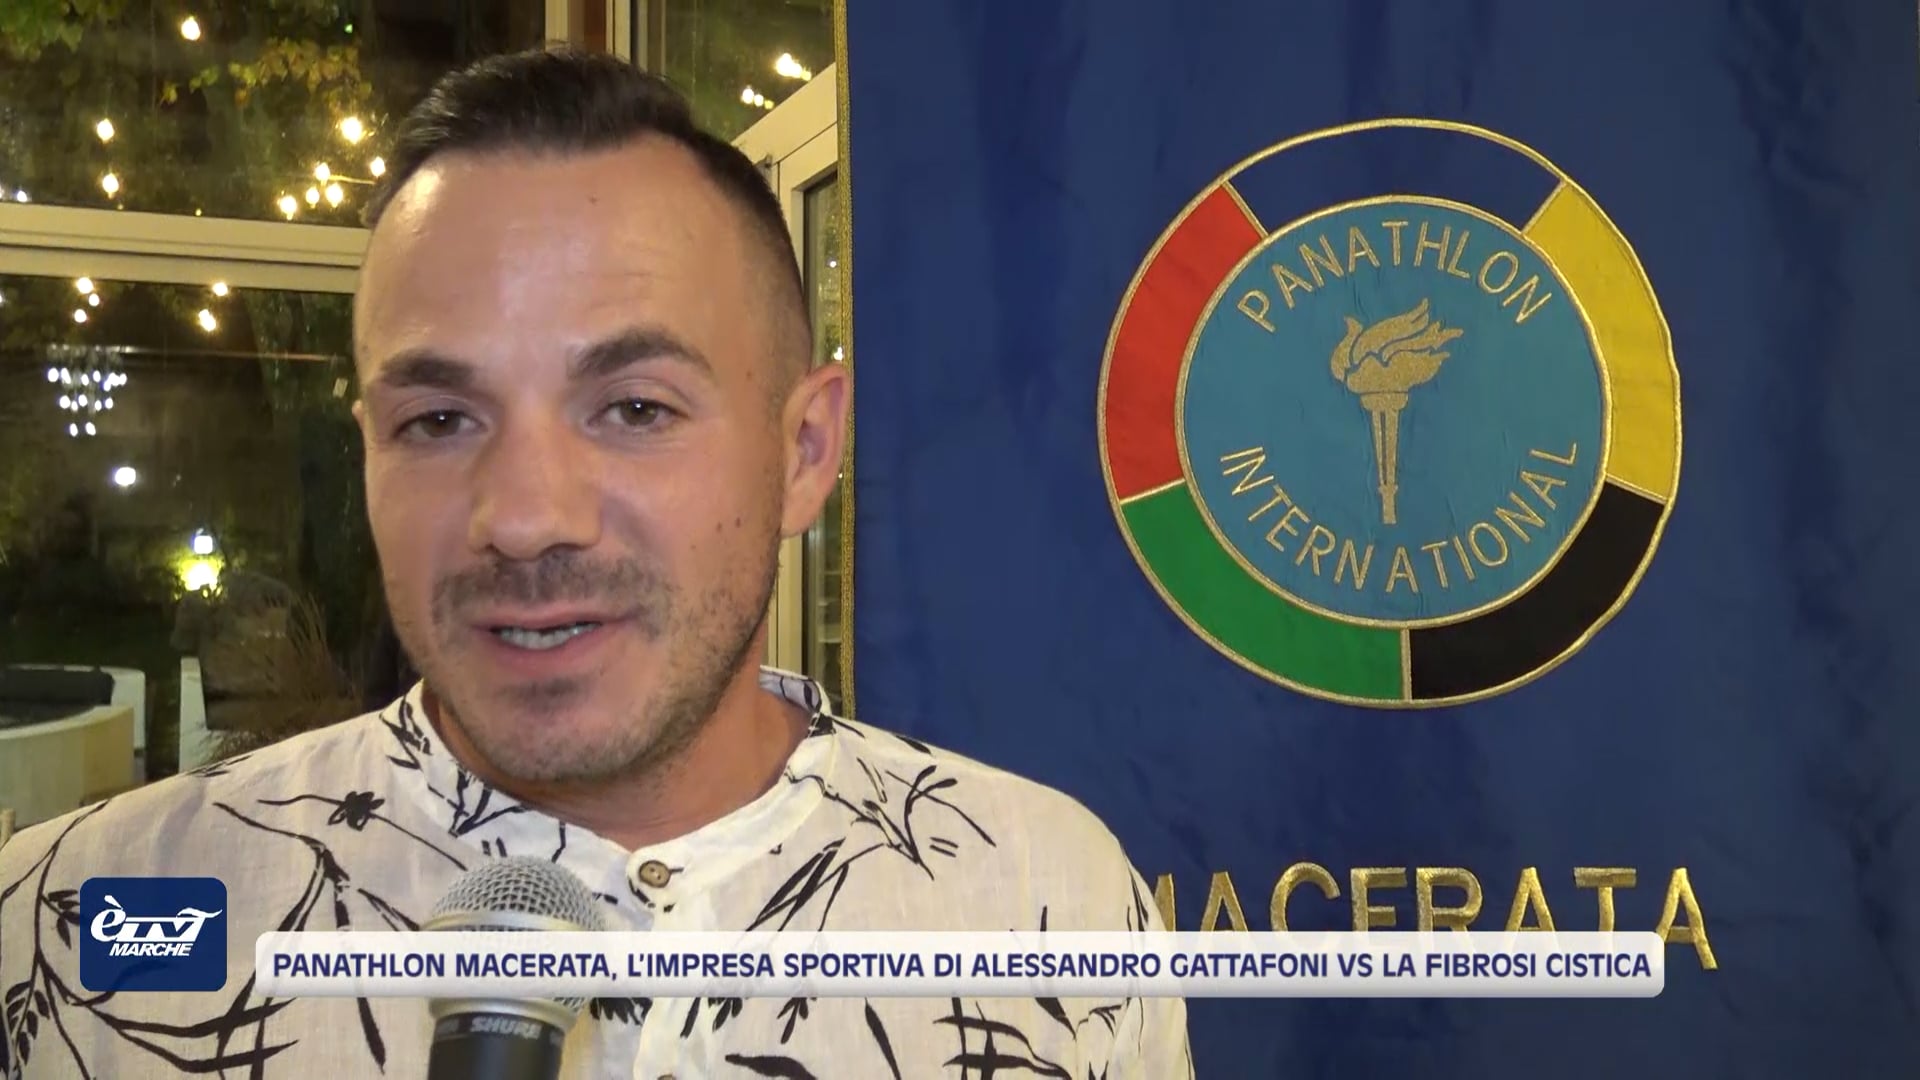 Panathlon Macerata, l’impresa sportiva di Alessandro Gattafoni vs la Fibrosi Cistica 